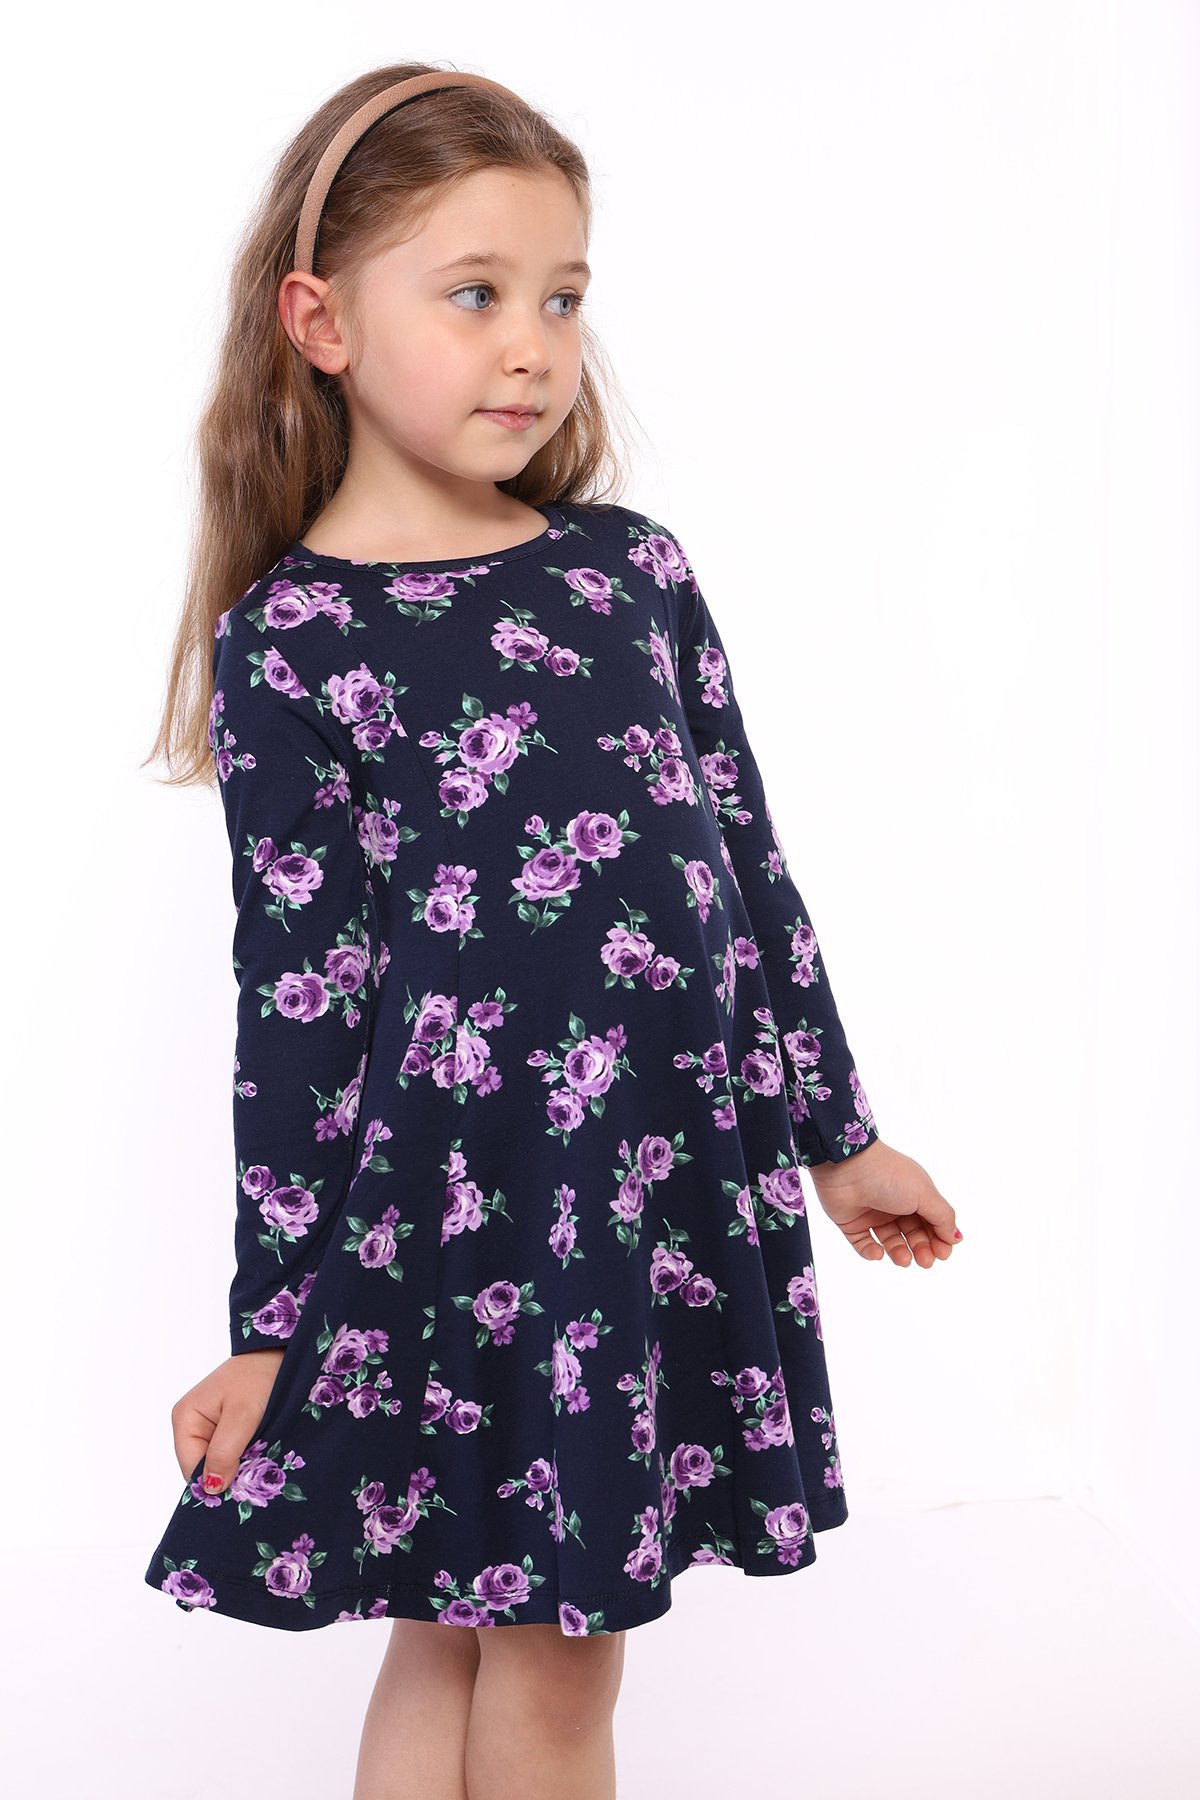 Toontoy Kız Çocuk Çiçek Desenli Elbise